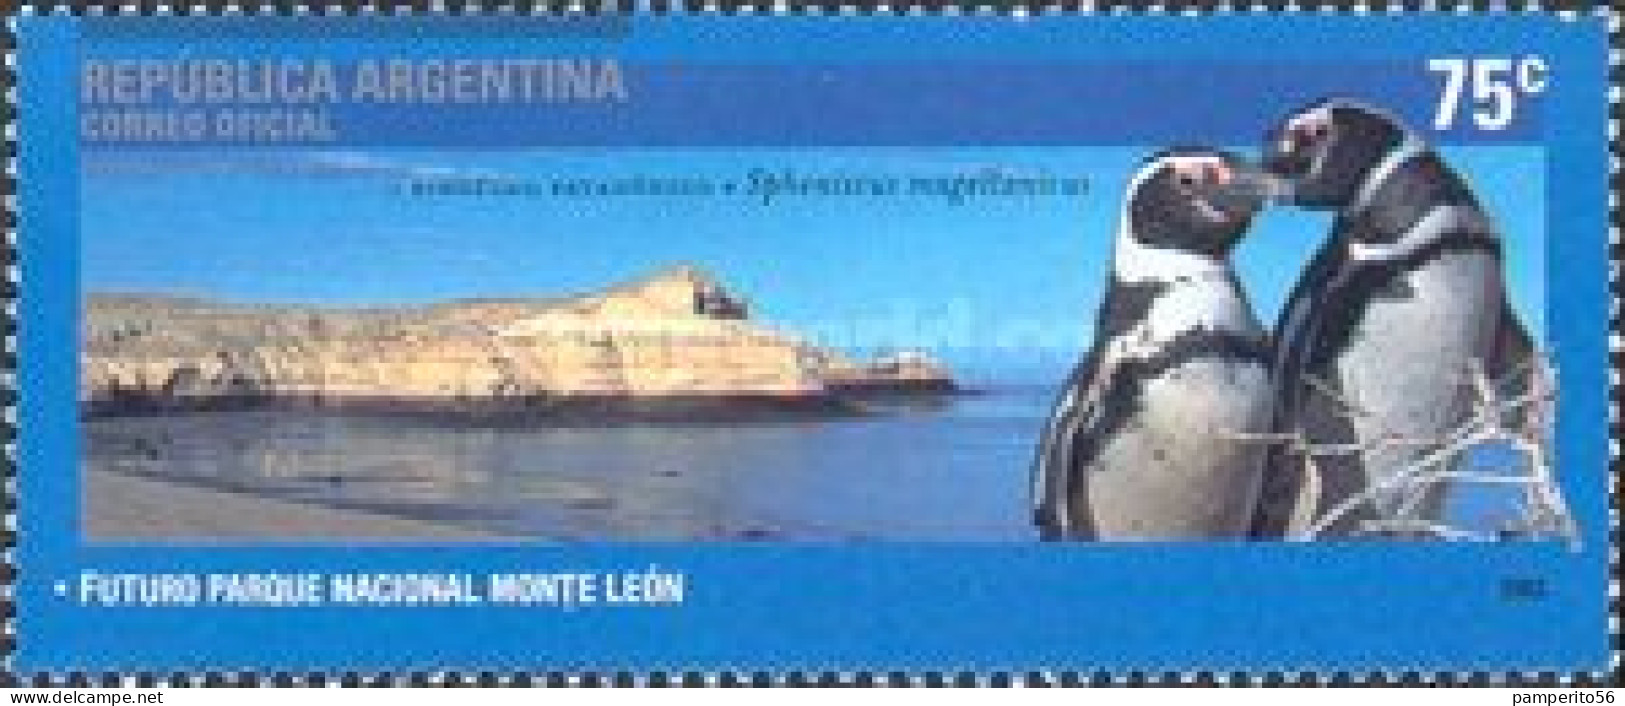 ARGENTINA - AÑO 2003 - Parques Nacionales, Parque Nacional Monte León, Pinguino Patagónico - Usada - Usati